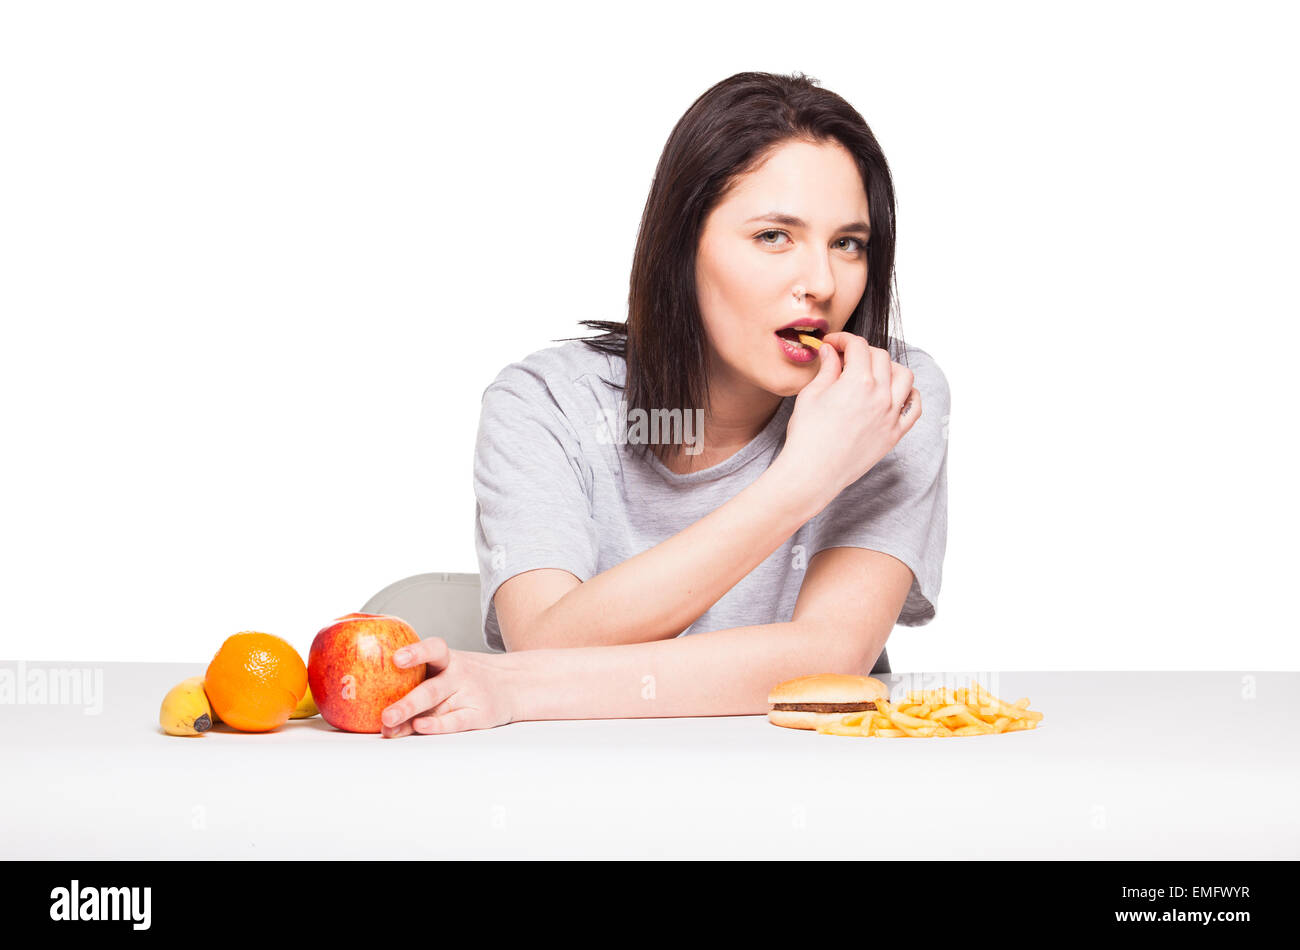 Par rapport à la malbouffe santé concept avec une femme naturelle dans les fruits avant d'attrape et repas avec hamburger frites, isolated on white Banque D'Images